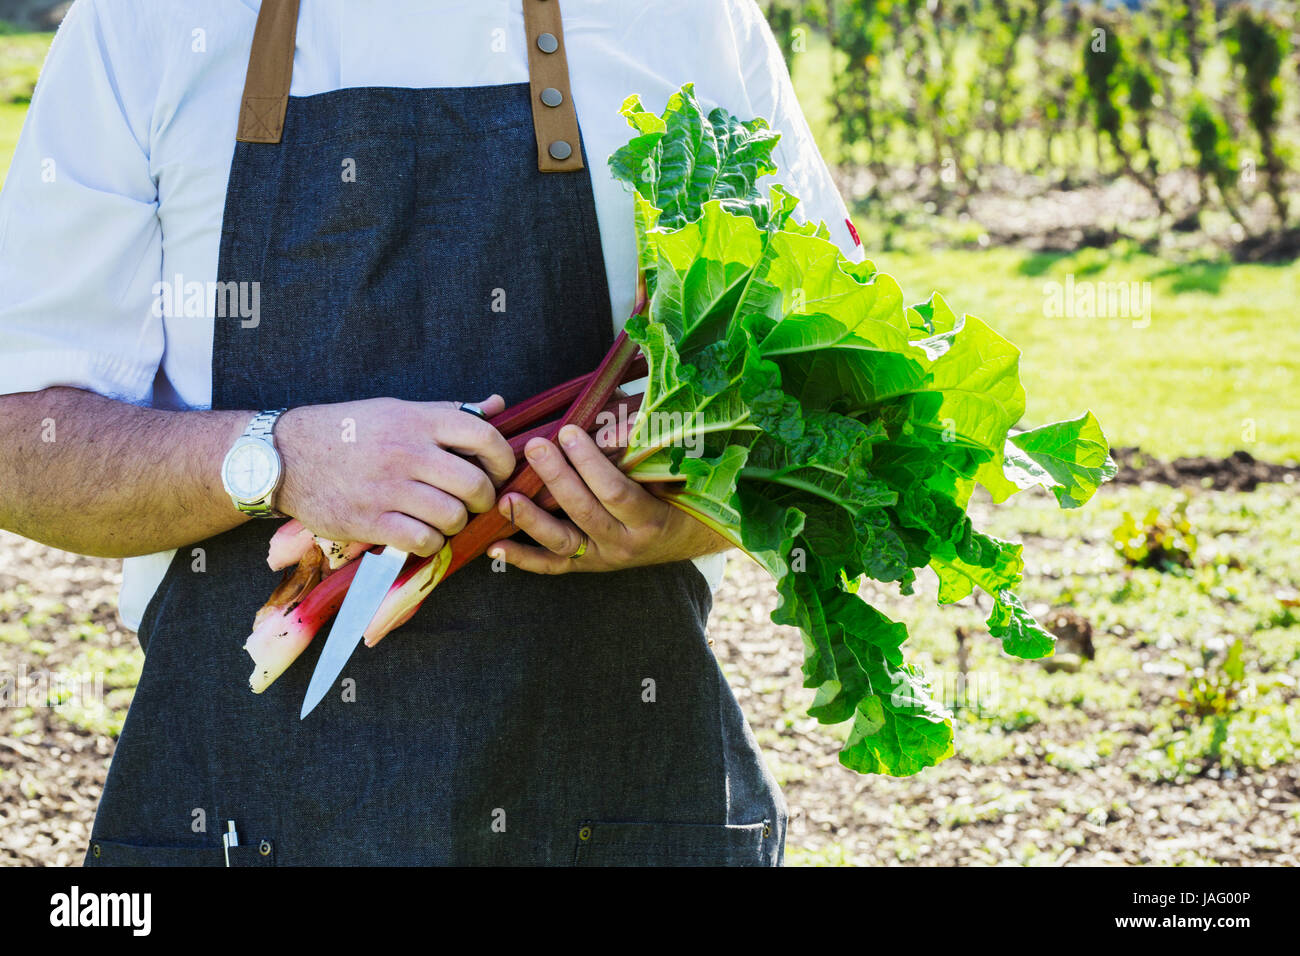 Mann trägt eine Schürze, die Ernte von frischen Rhabarber in einem Garten. Stockfoto